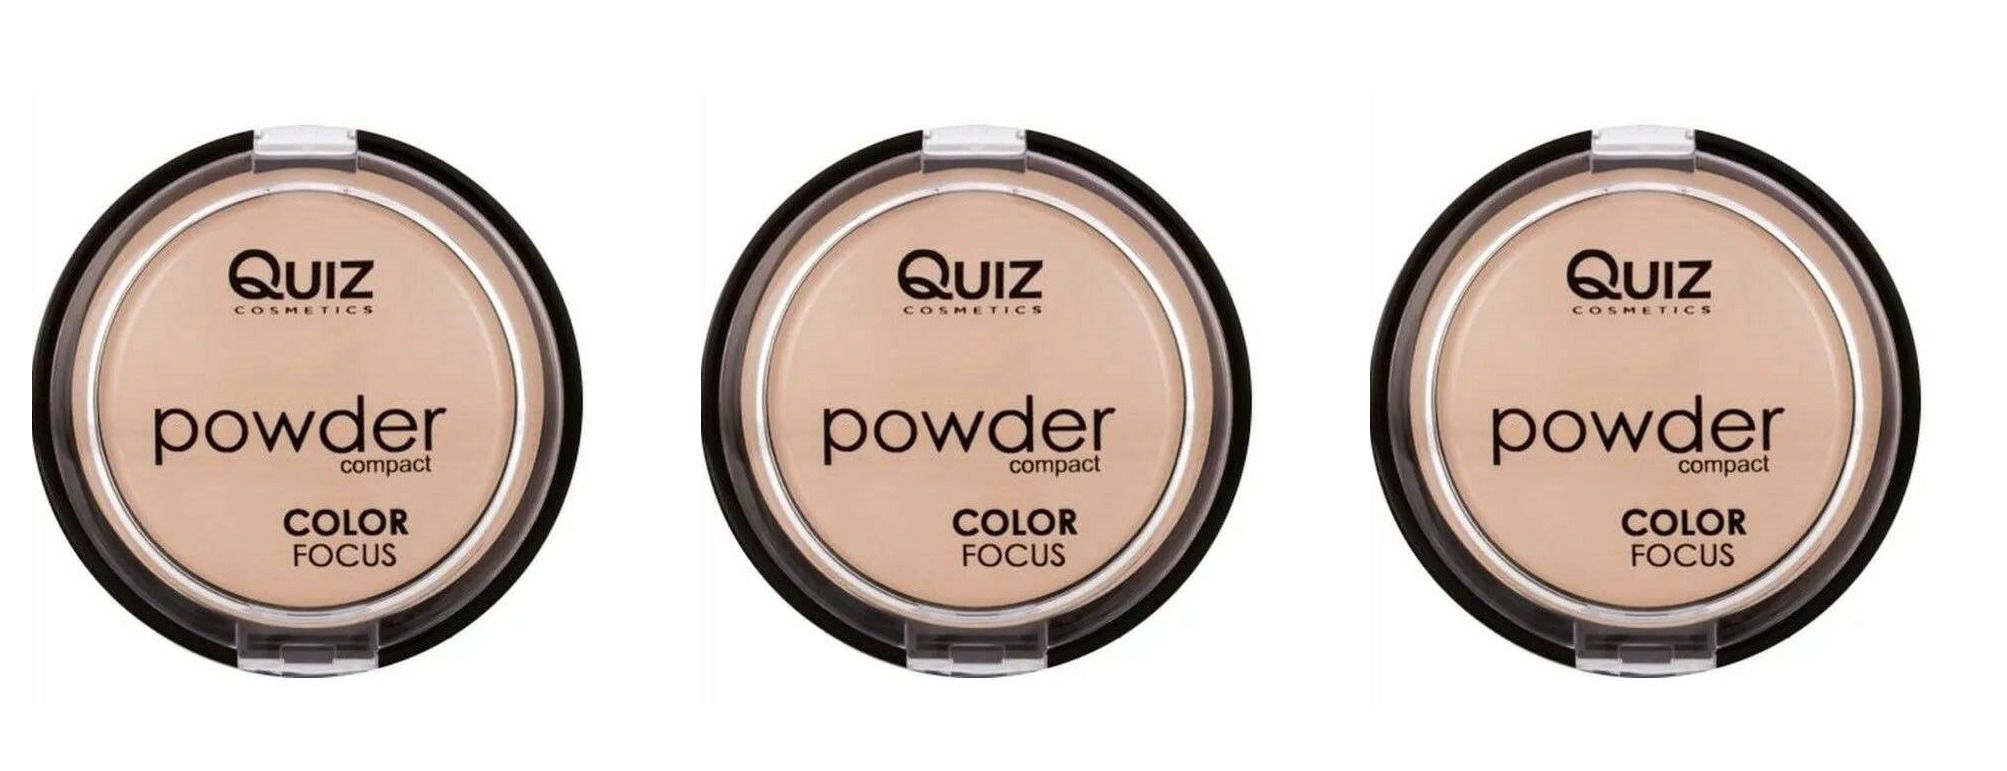 Пудра компактная Quiz cosmetics, Powder Focus, Color 60, 3 шт кисть absolute new york косметическая для пудры soft focus powder brush